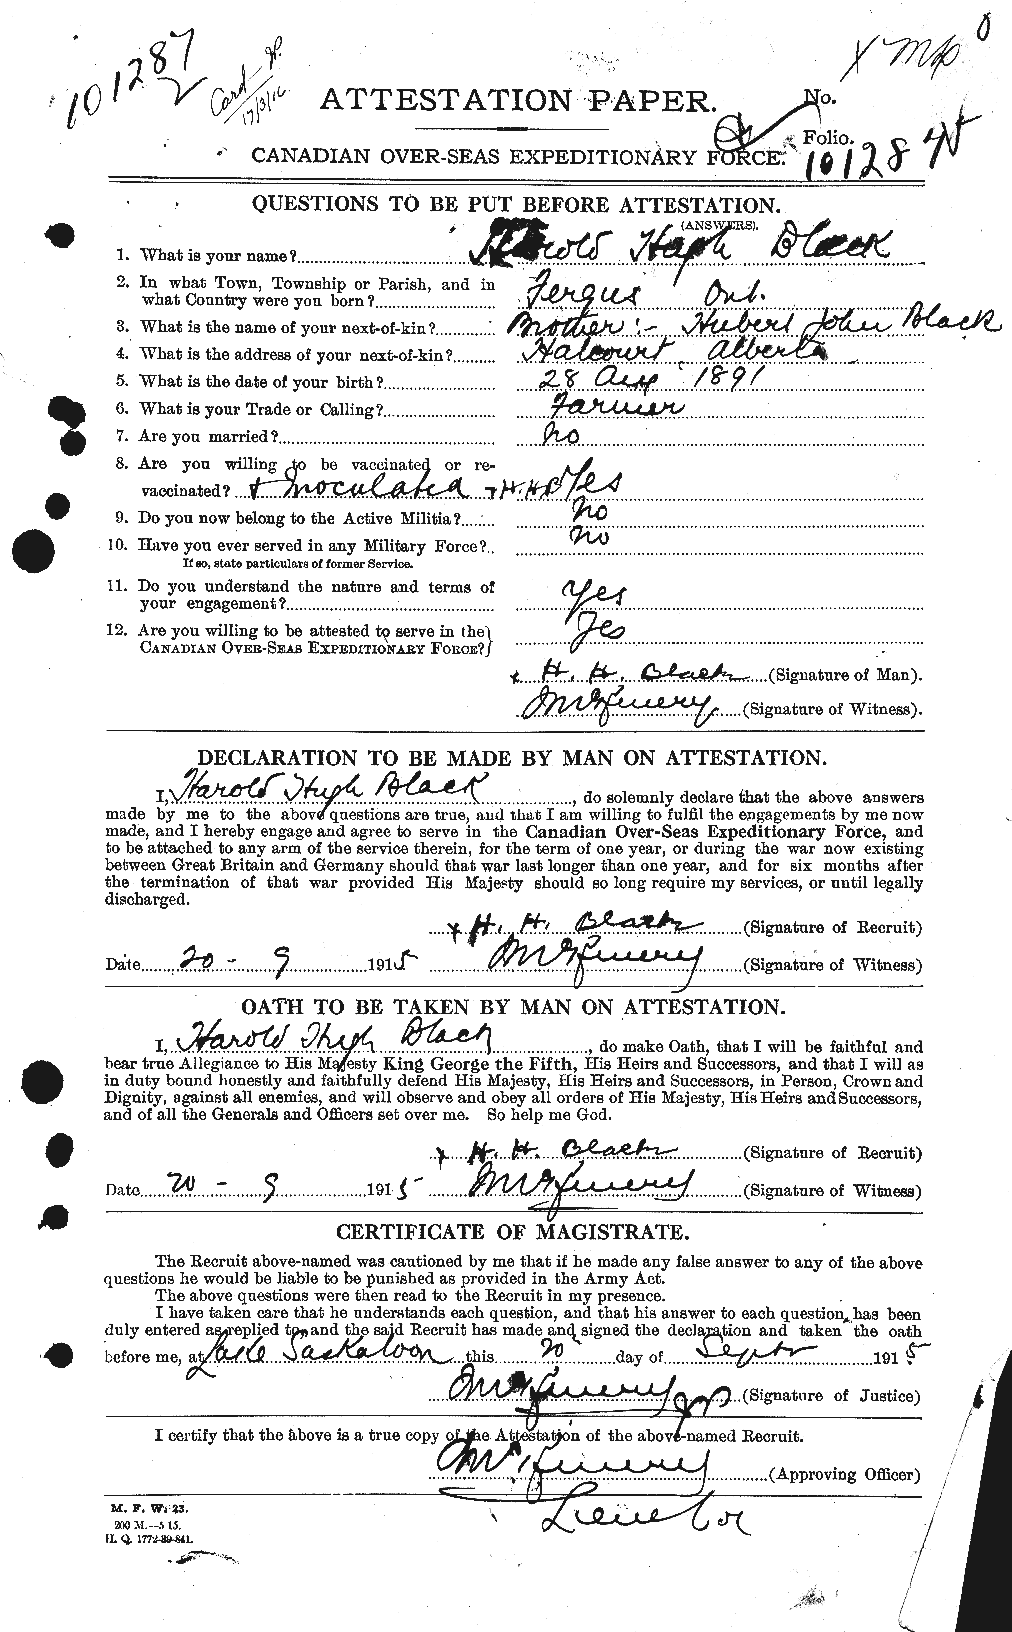 Dossiers du Personnel de la Première Guerre mondiale - CEC 241391a